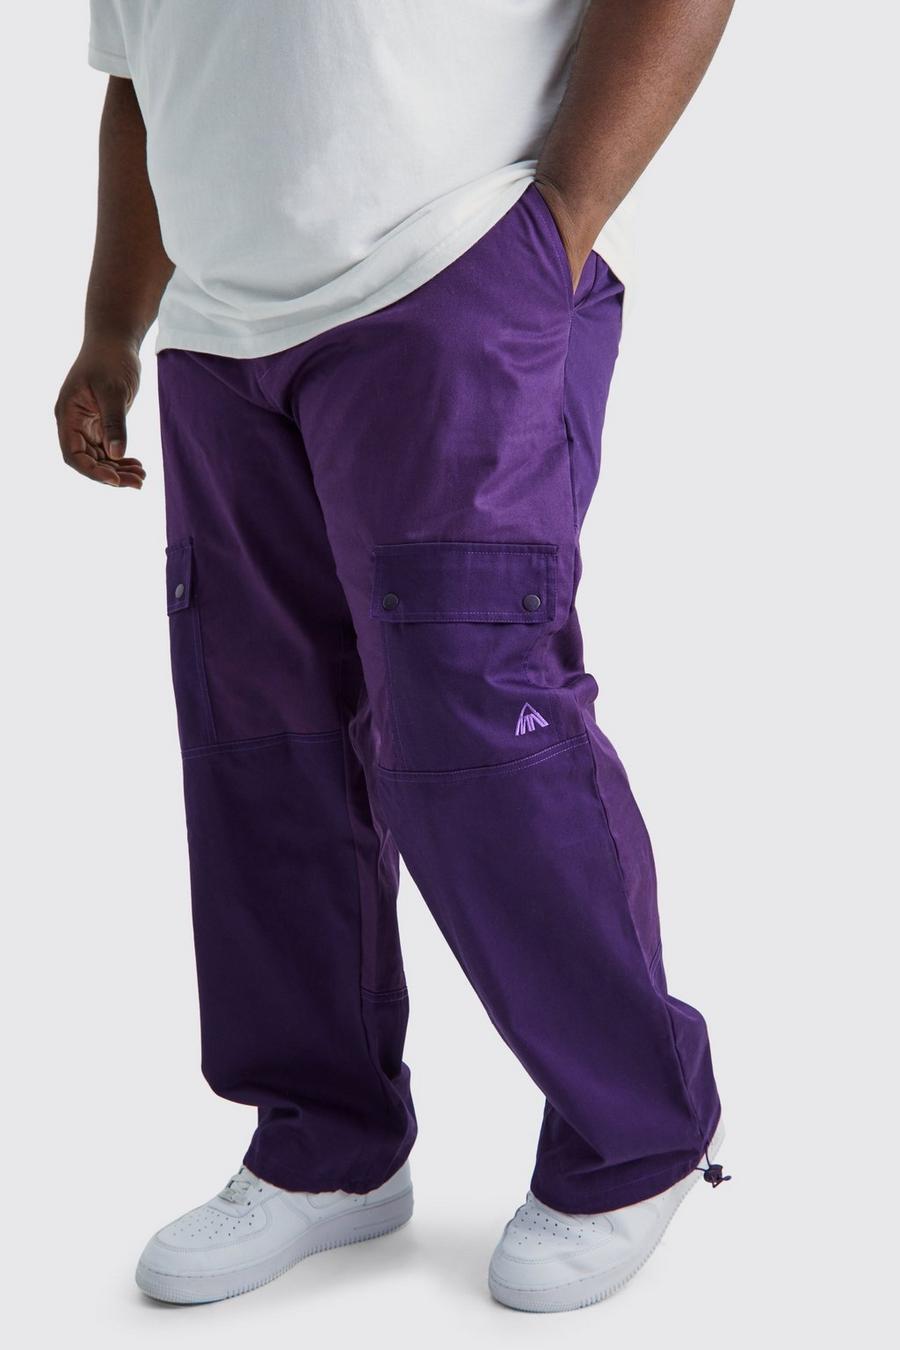 Pantalón Plus holgado cargo con colores en bloque, Purple